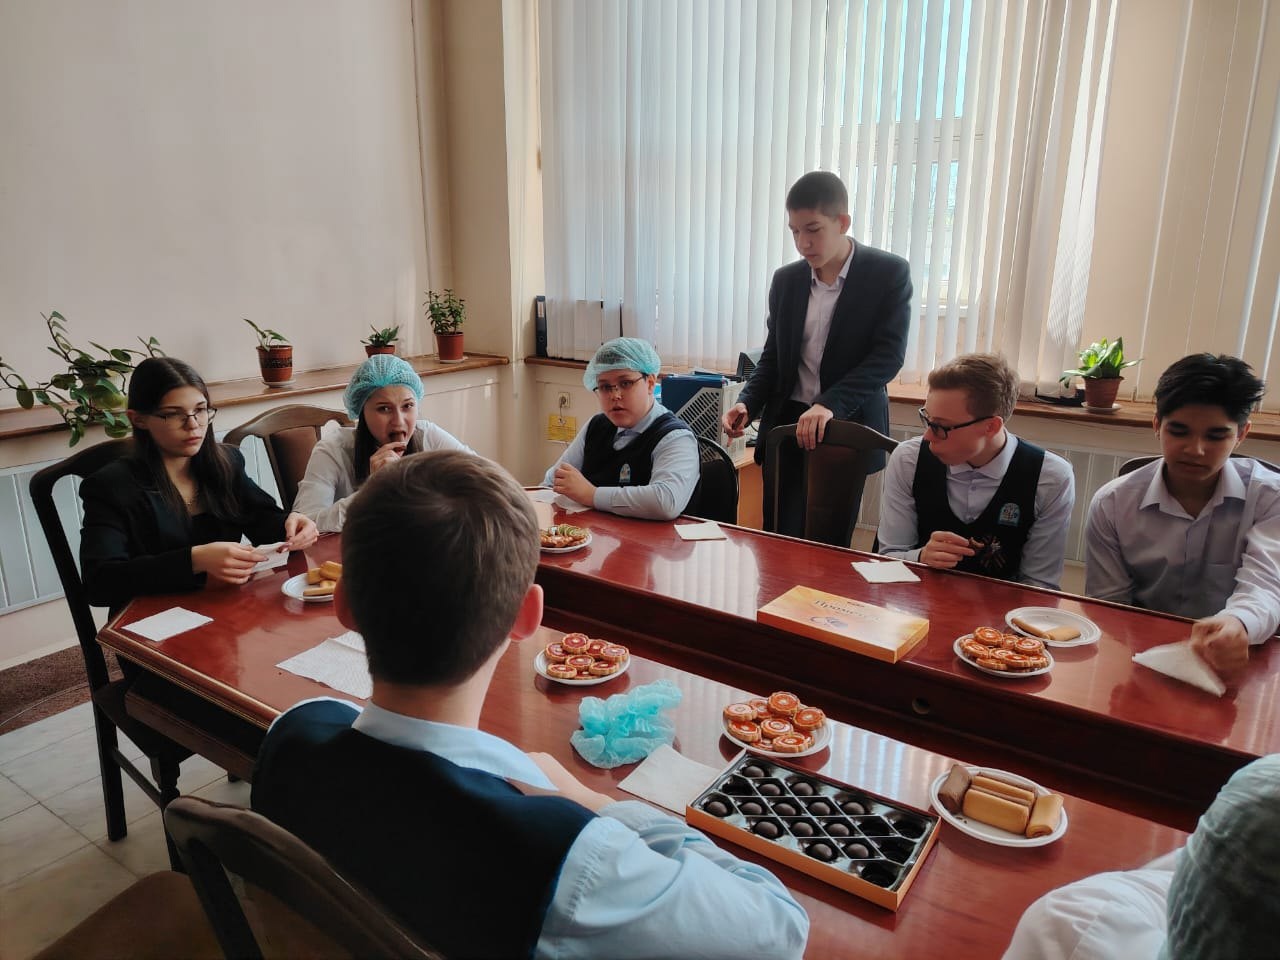 Ученики Саранской школы №39 в рамках профориентации посетили Кондитерскую фабрику "Ламзурь"